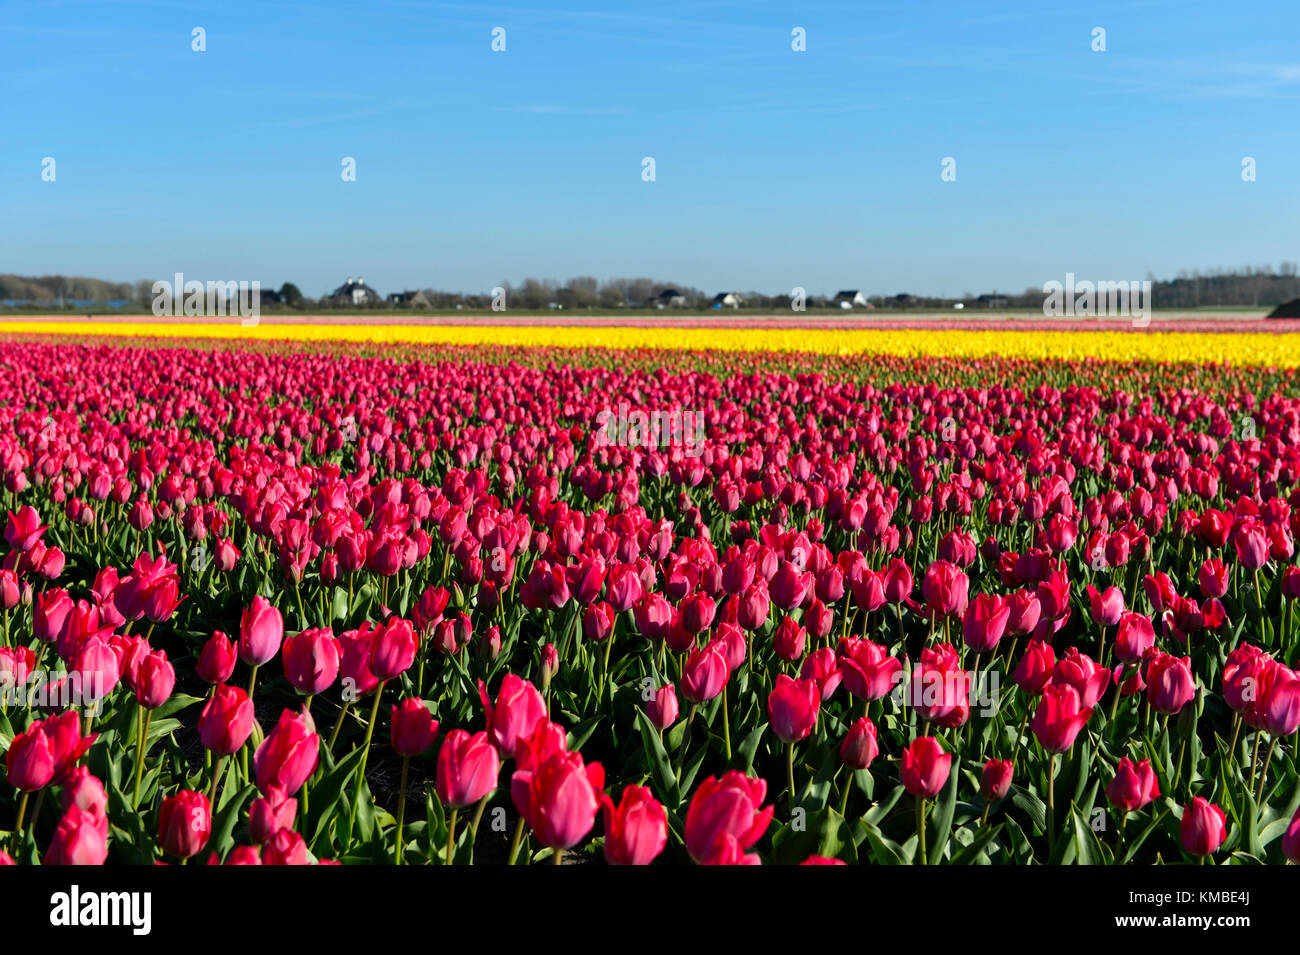 Field of pink tulips of the species Lady Van Eijk for the production of flower bulbs in the Bollenstreek area, Noordwijkerhout, Netherlands Stock Photo